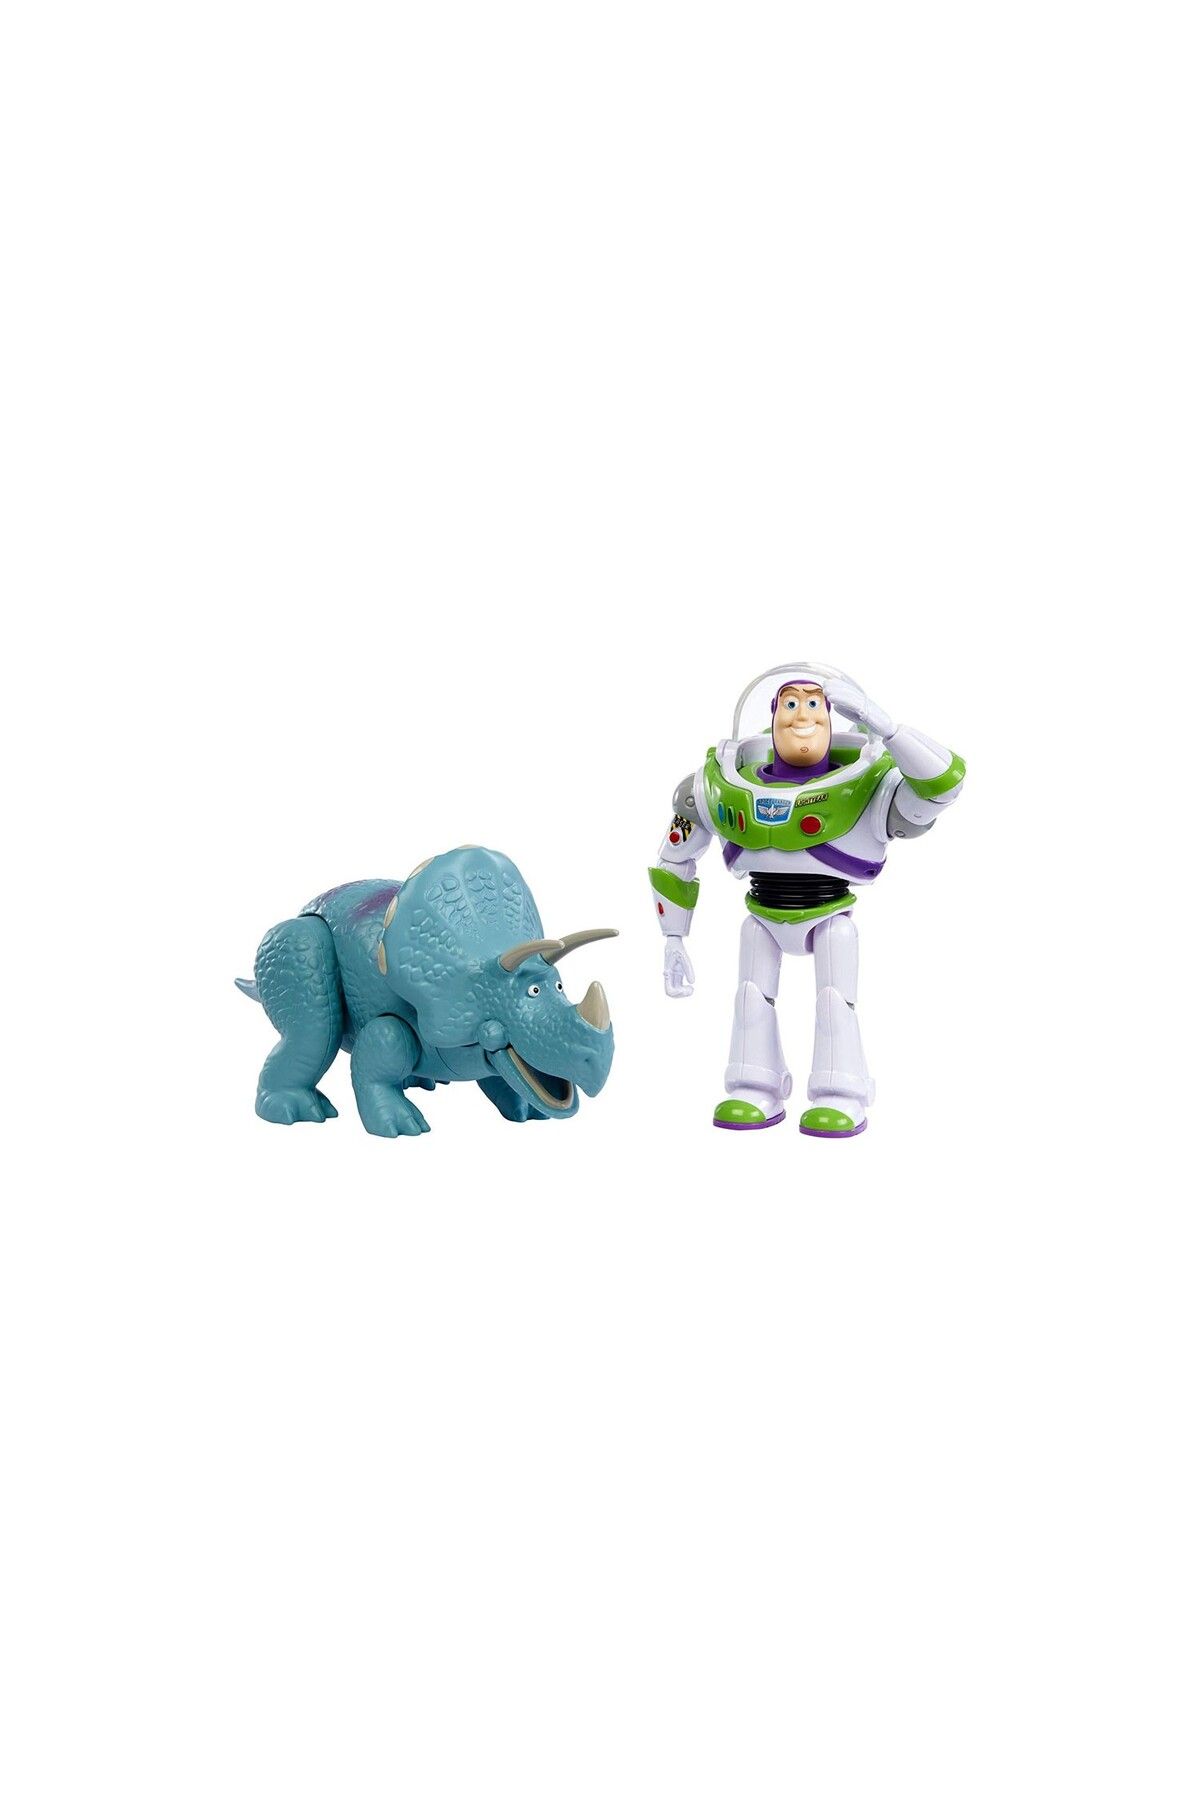 sommeow Toy Story İkili Figür Seti Buzz Lightyear Trixie Ggb26 - Gjh80